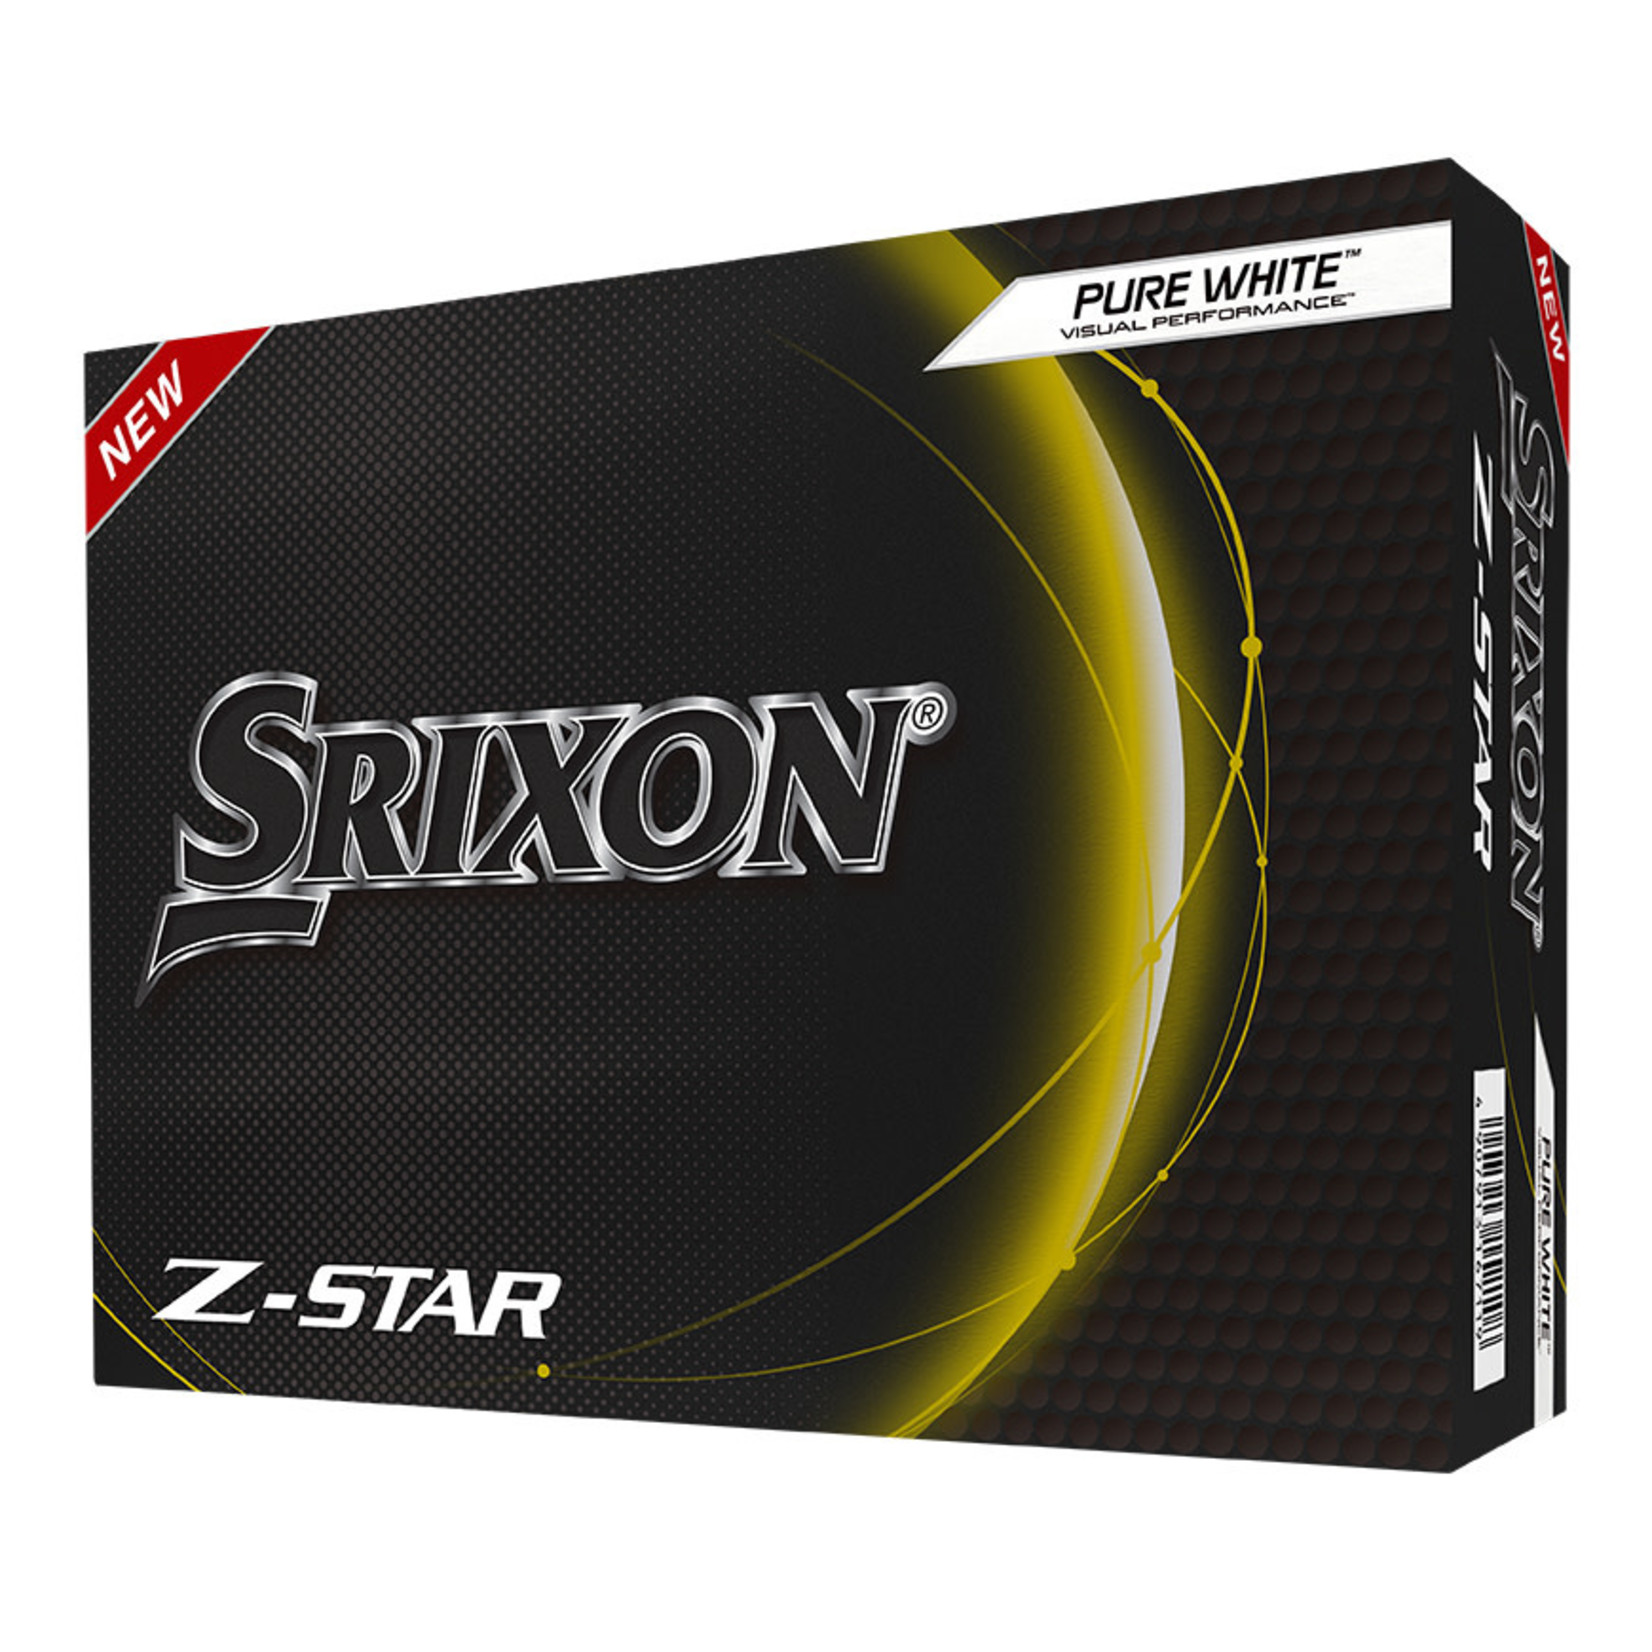 Srixon Srixon Zstar - White